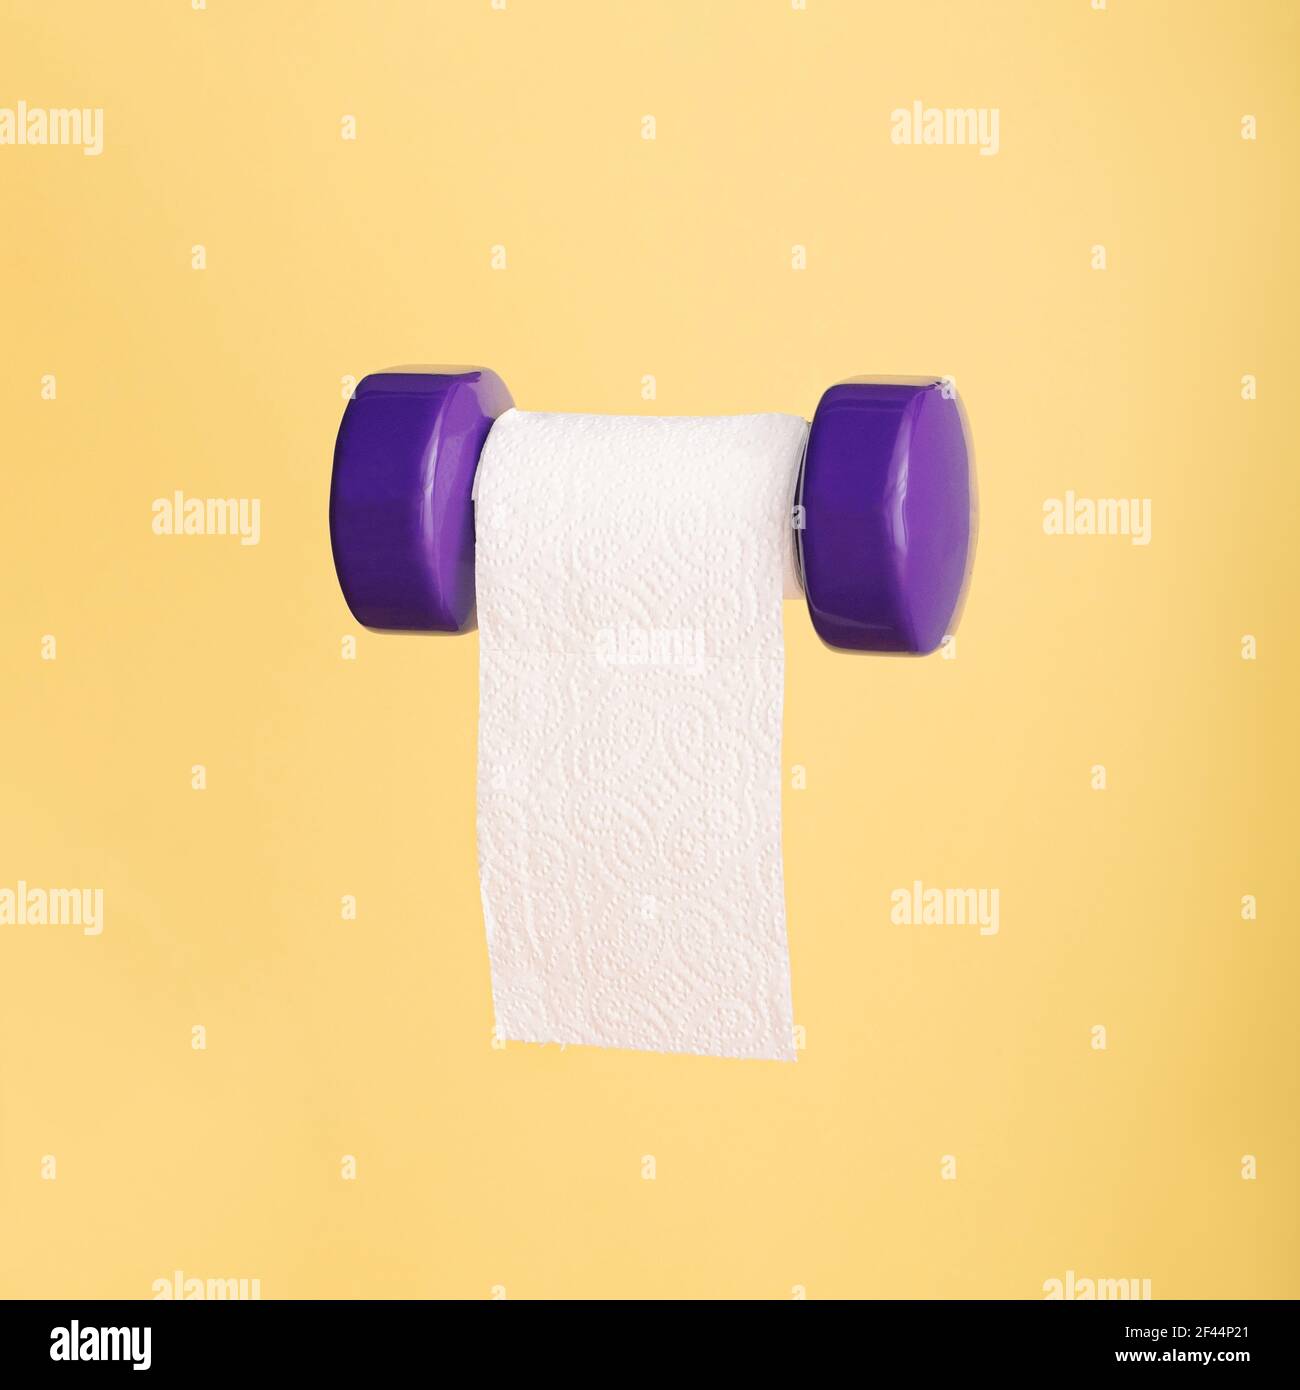 Lustige Fitness-Konzept mit Toilettenpapier hängen auf lila Übung Hantel  Gewicht auf gelbem Hintergrund Stockfotografie - Alamy